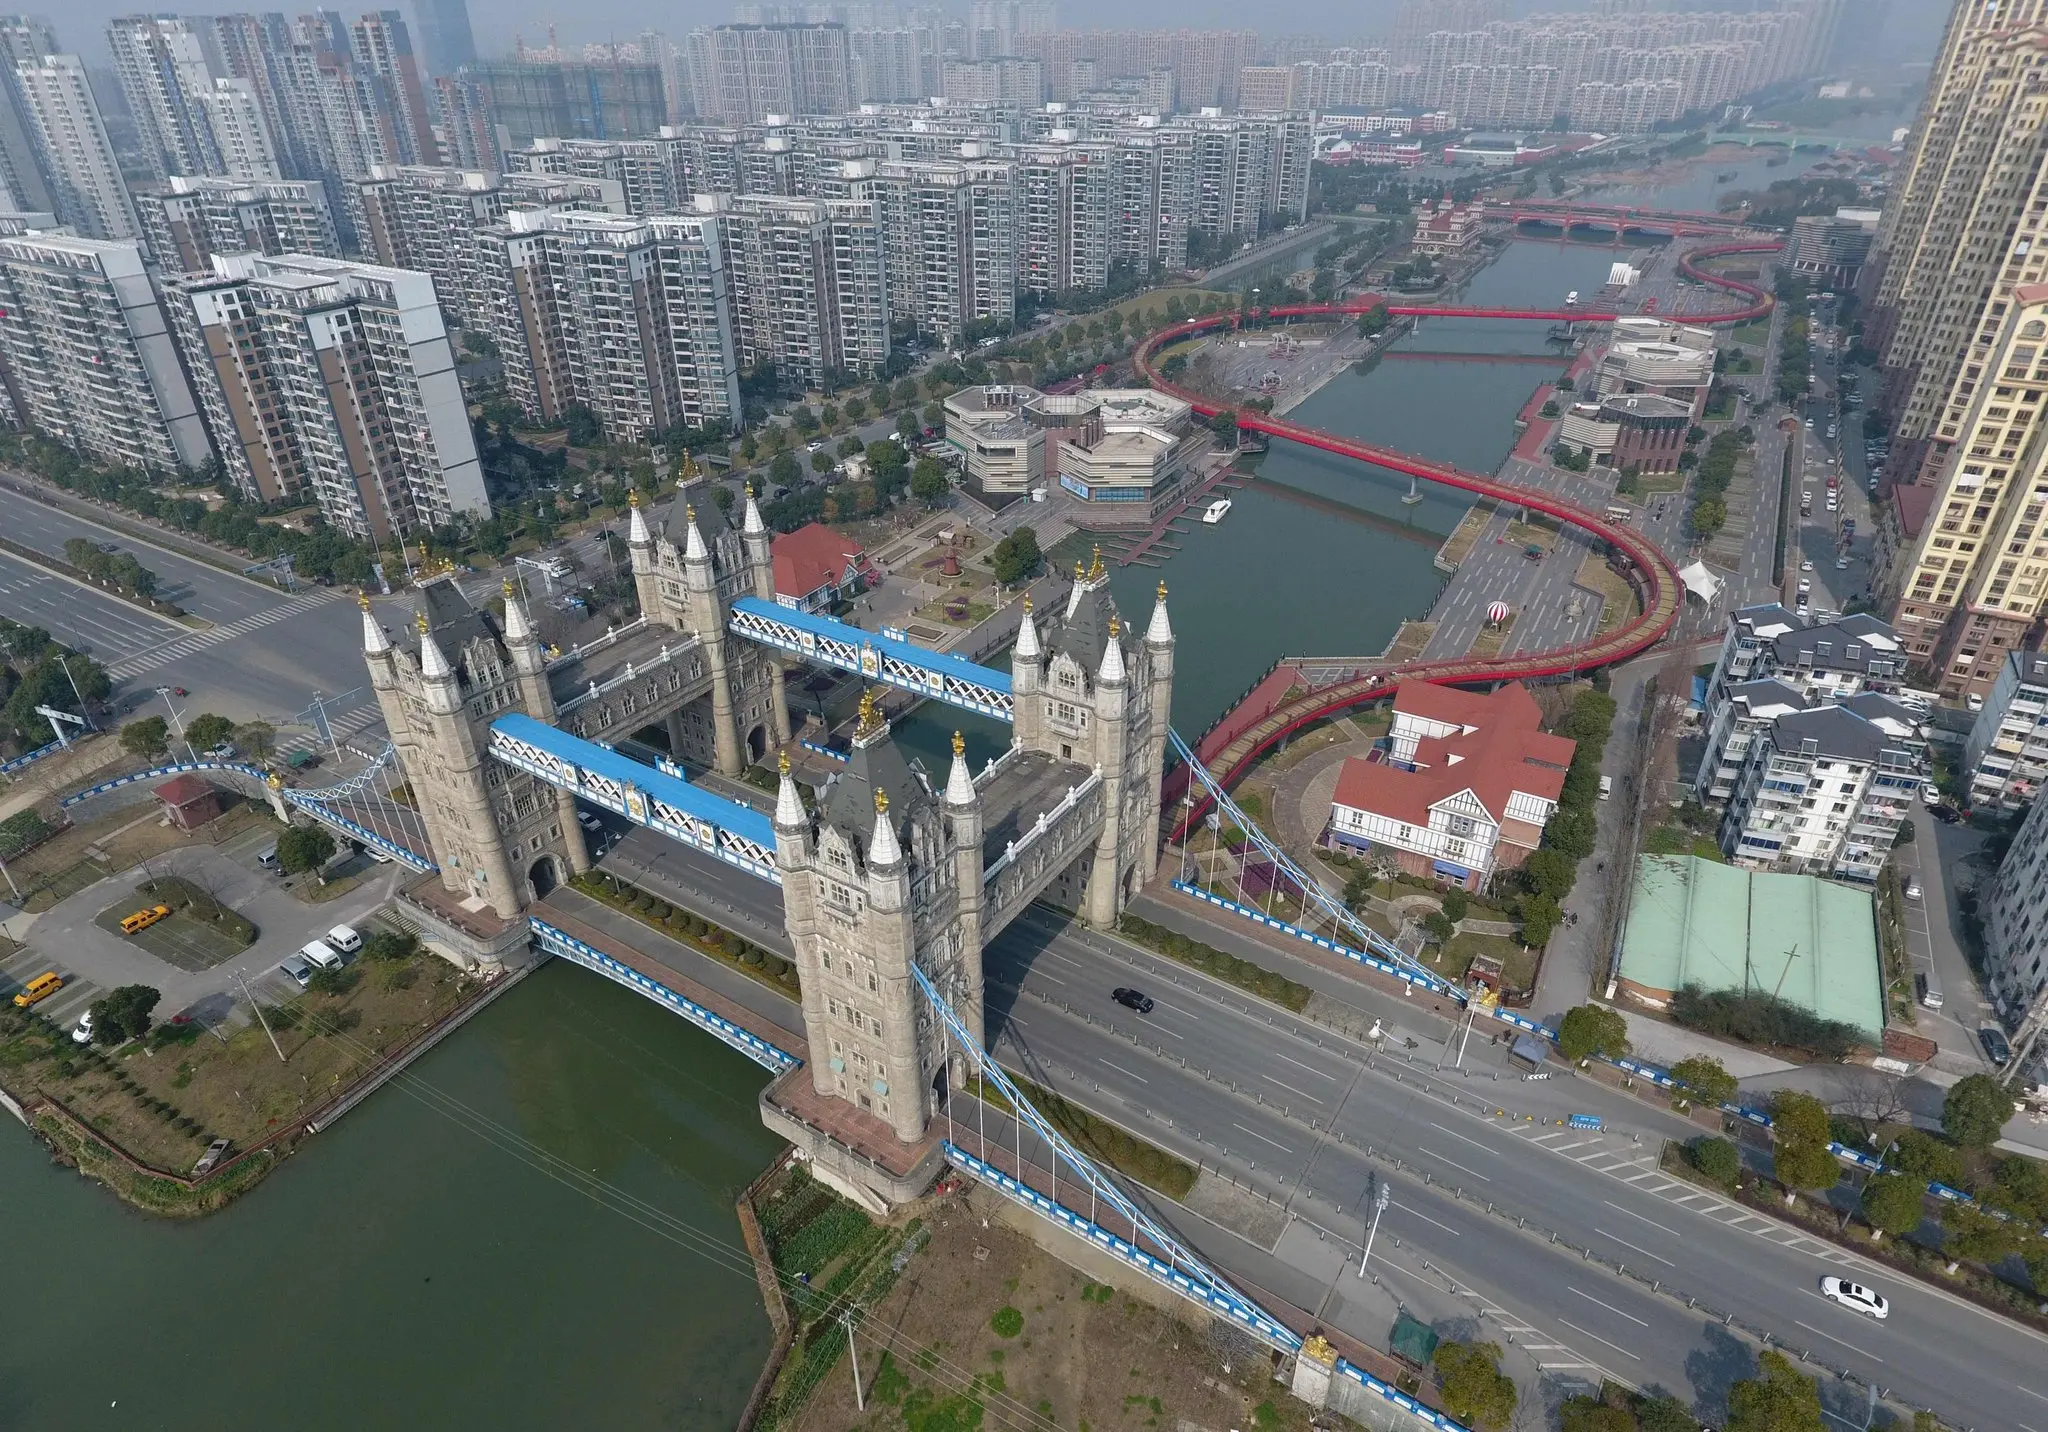 1 cây cầu cùng tên ở thành phố Tô Châu, phía đông Trung Quốc, được mô phỏng theo cầu Tháp của London nhưng có 4 tháp thay vì 2.